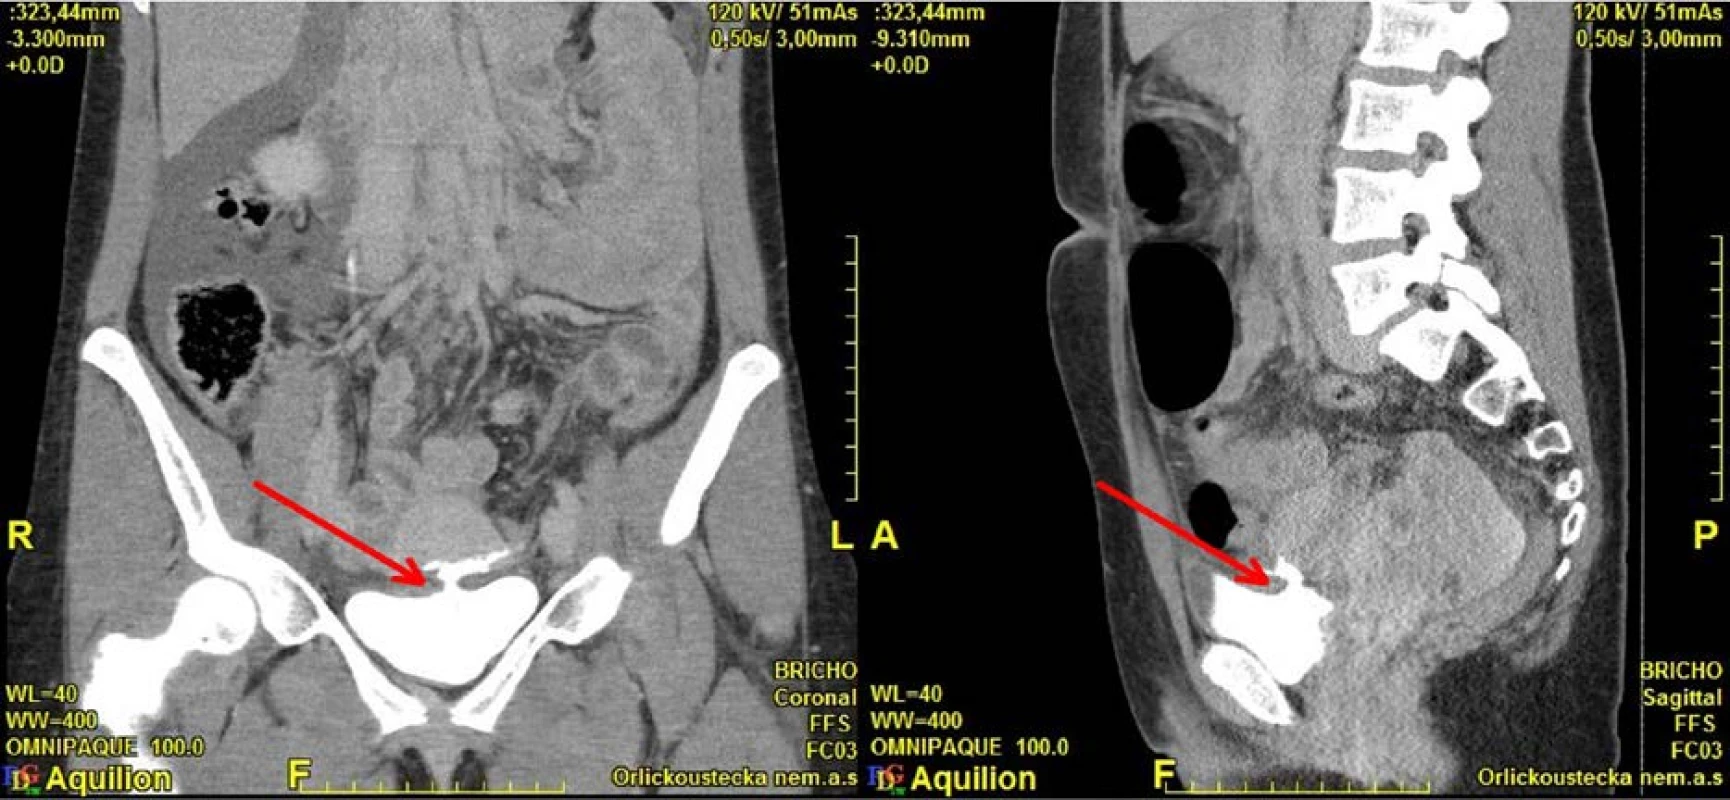 CT, koronární a sagitální řez: intraperitoneální perforace močového měchýře<br>
Fig. 5. CT, coronal and sagittal plane: intraperitoneal bladder perforation